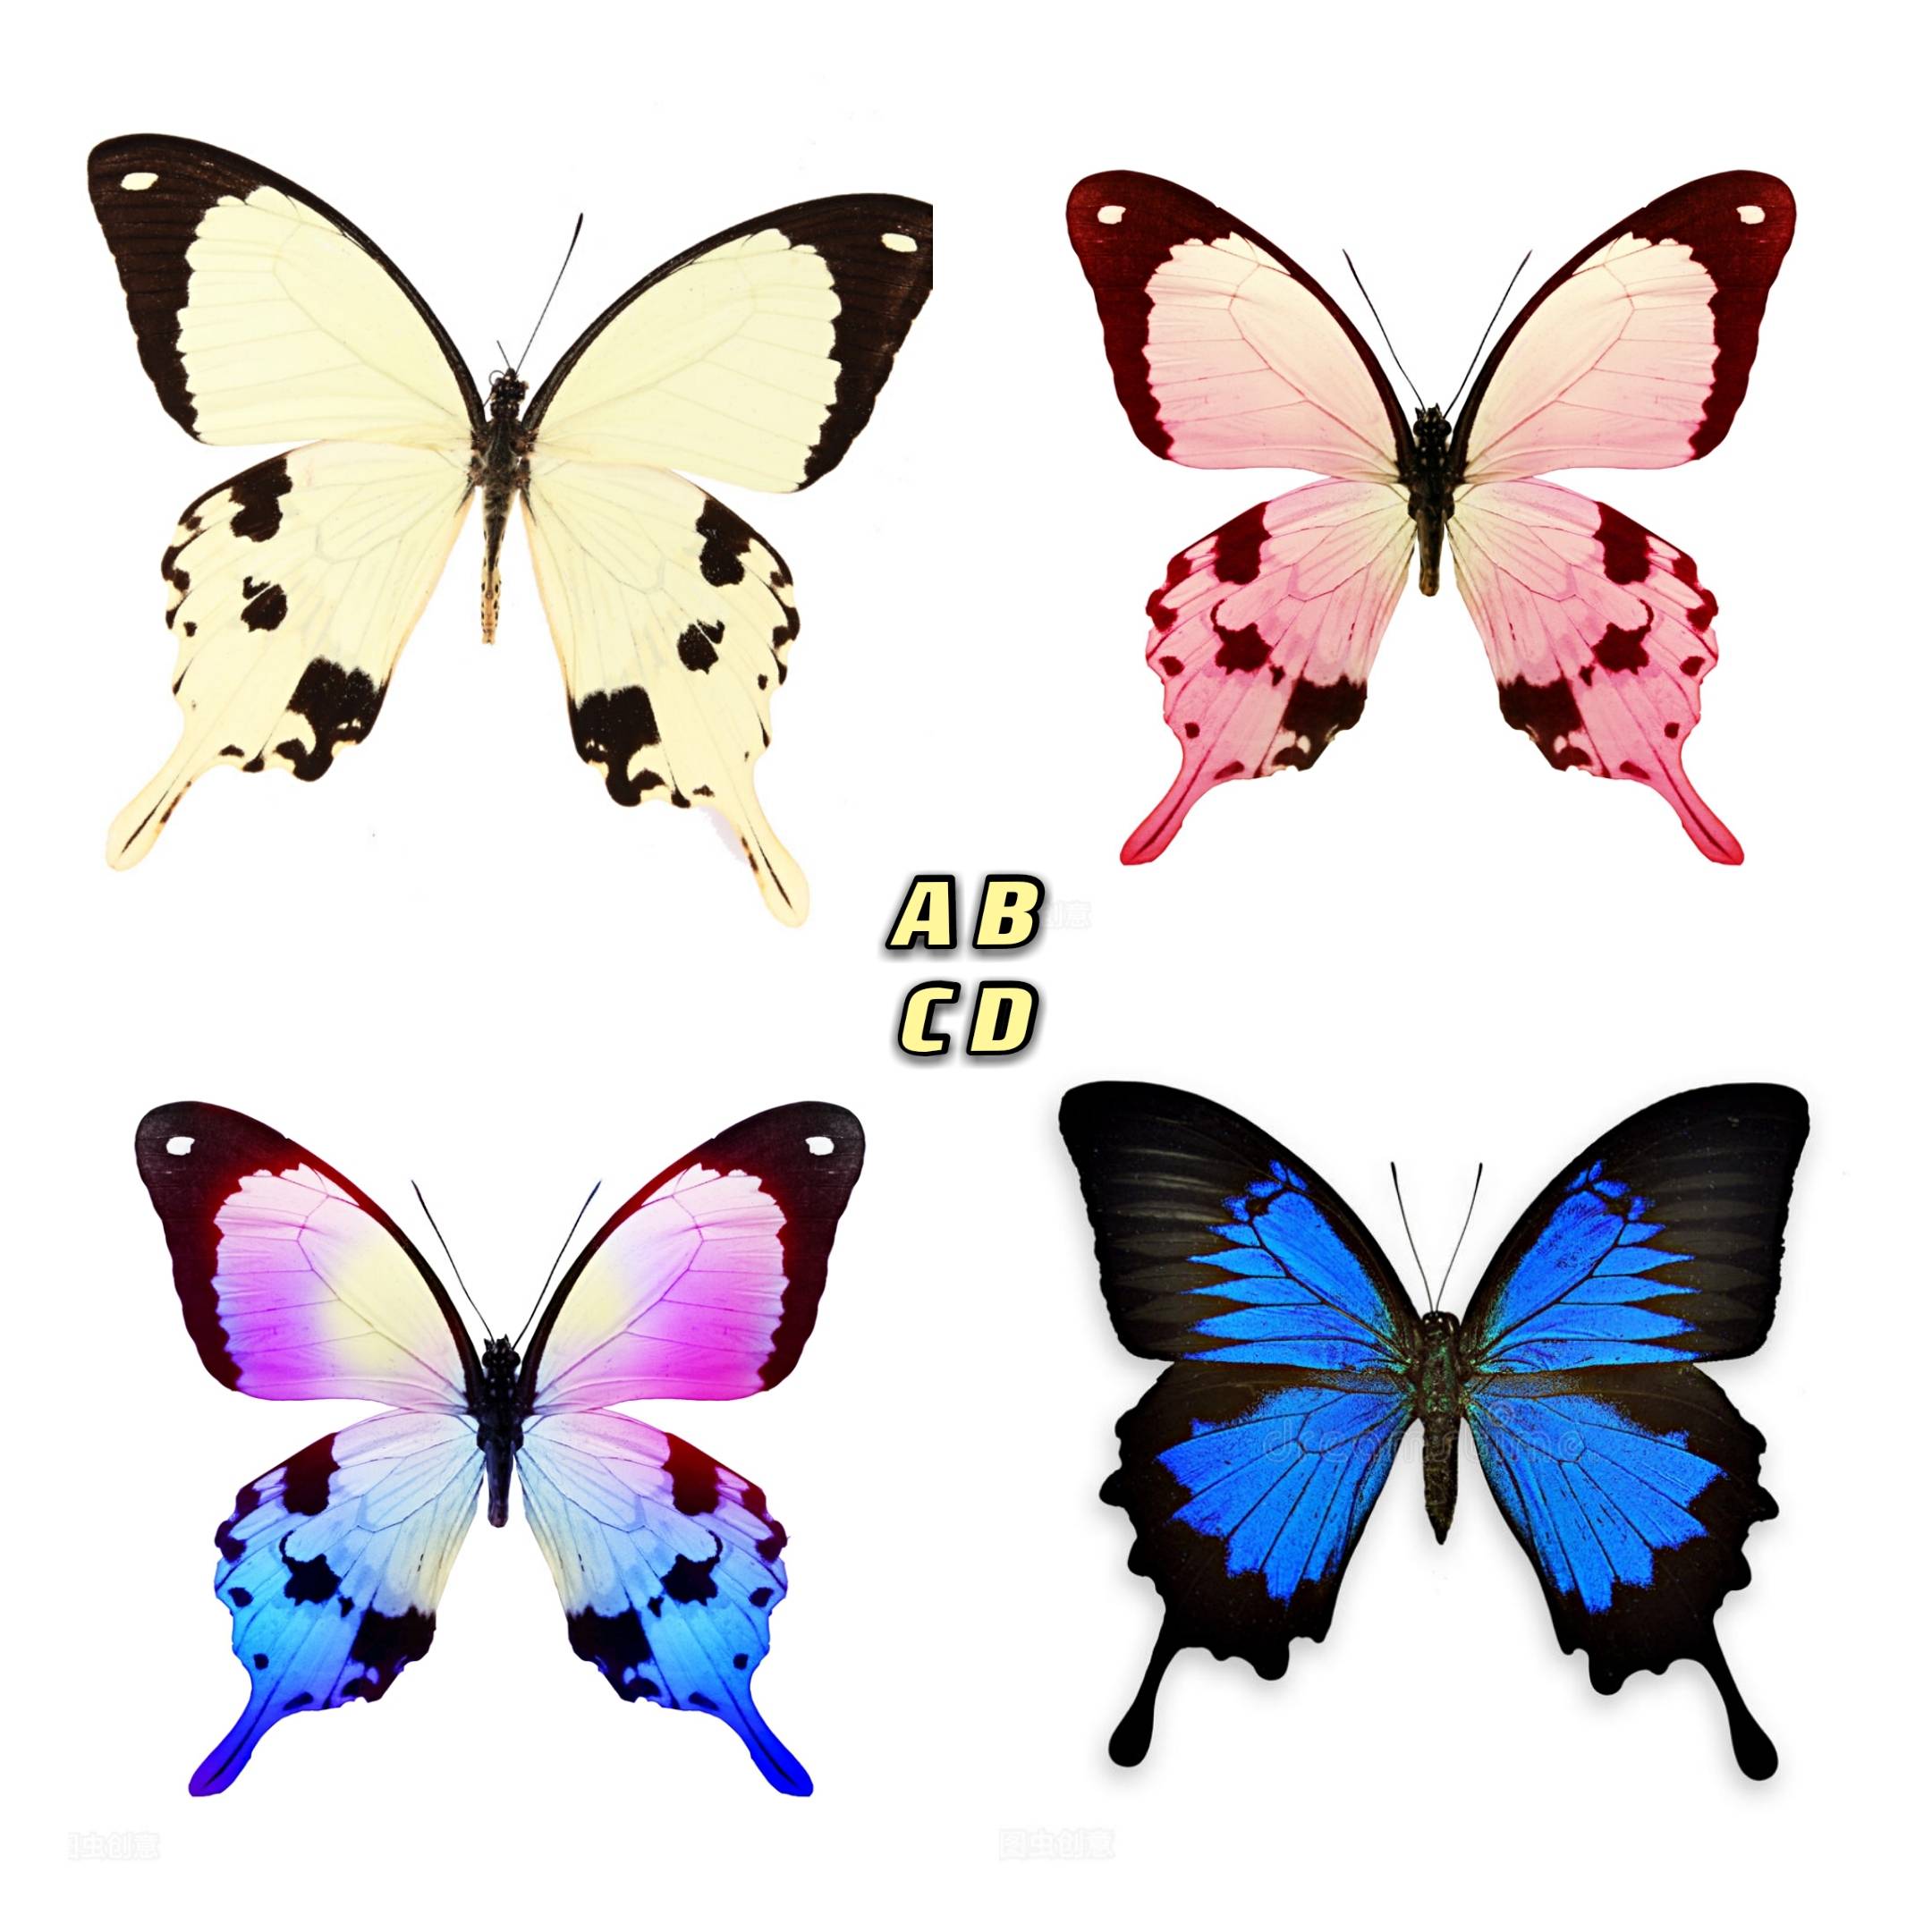 原创心理测试:凭感觉选一只蝴蝶,测你与另一半相差几岁?